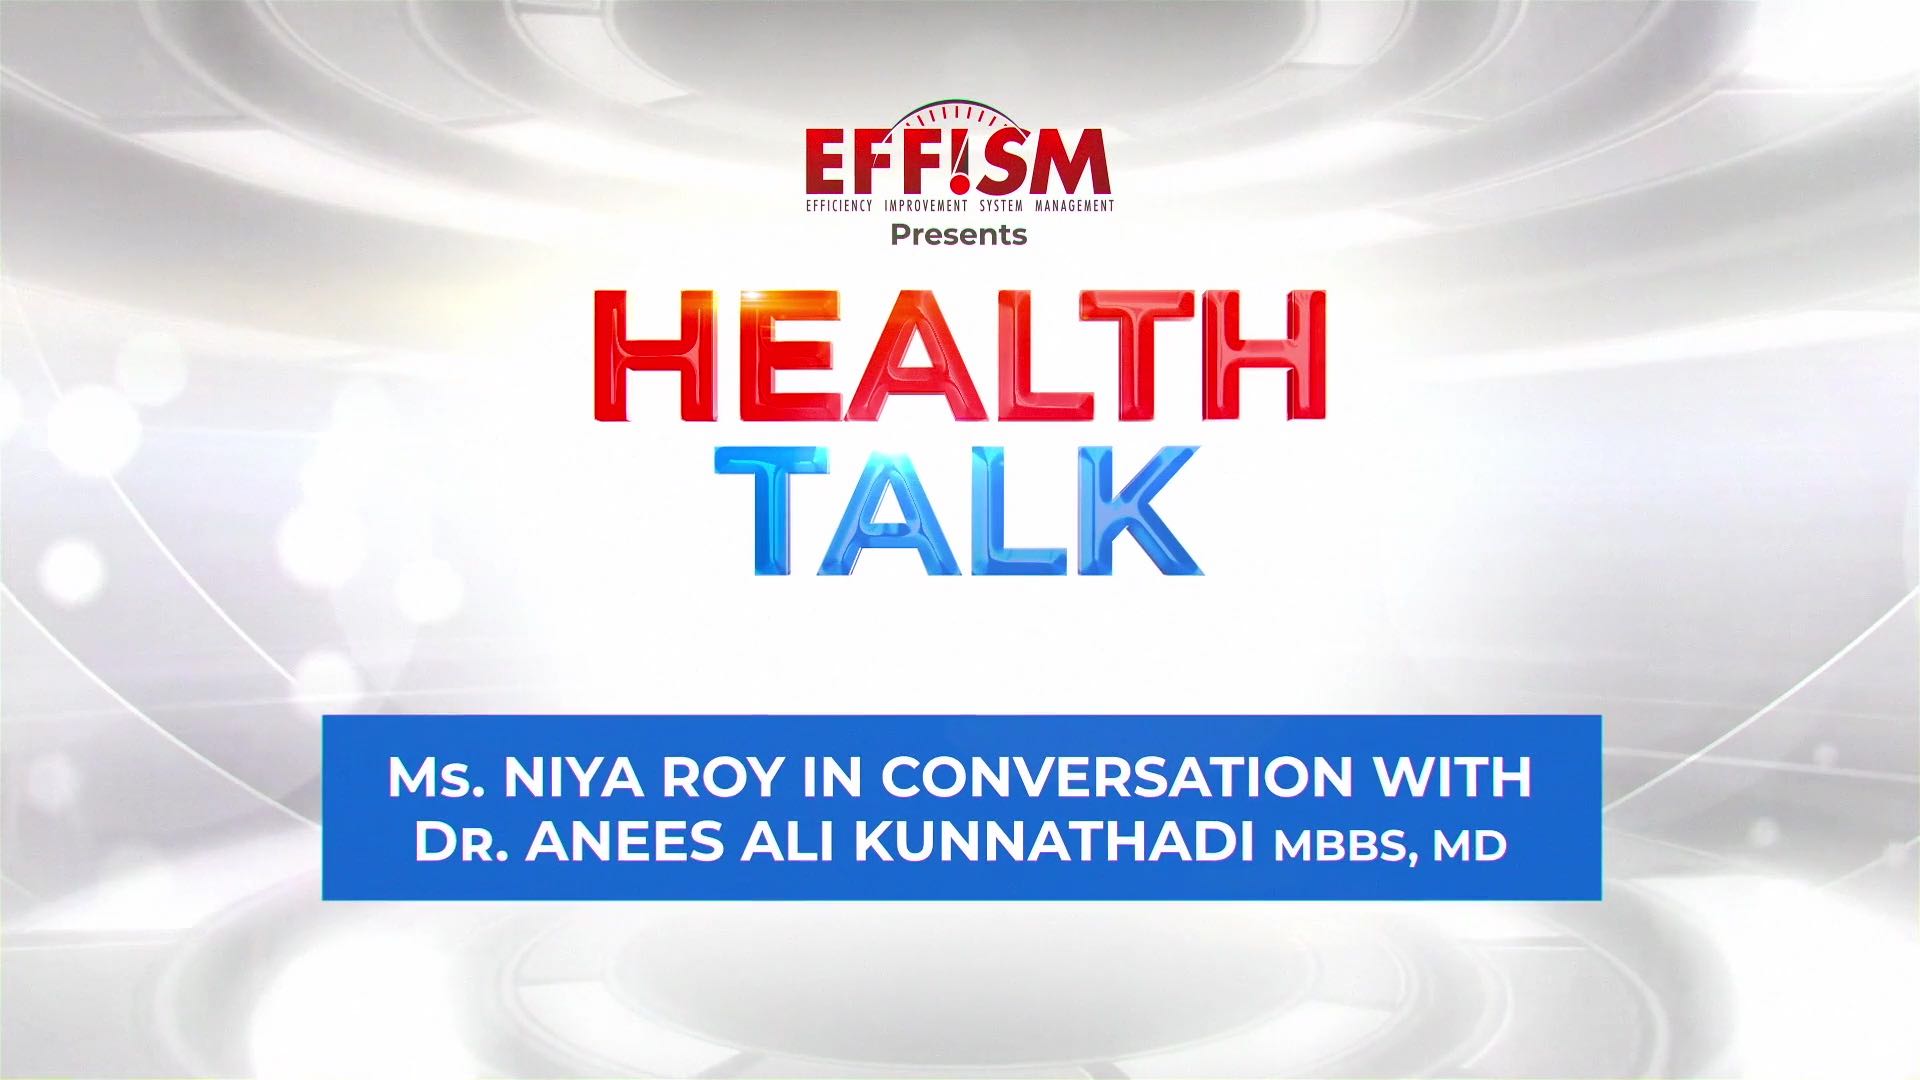 Ms. Niya Roy in conversation with Dr. Anees Ali Kunnathadi